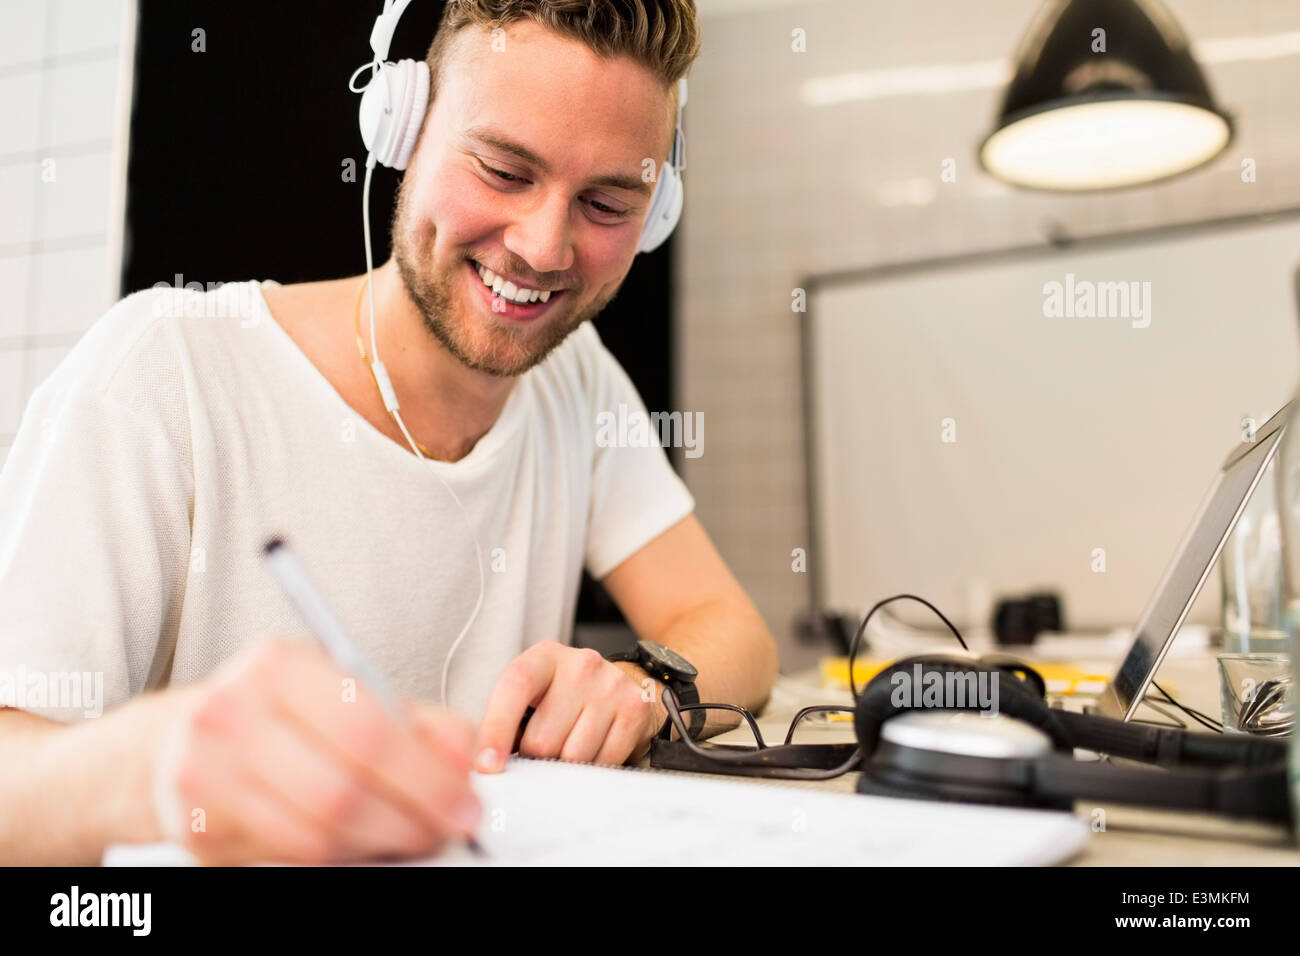 Feliz joven empresario de llevar puestos los auriculares mientras escribía en el libro en la oficina creativa Foto de stock